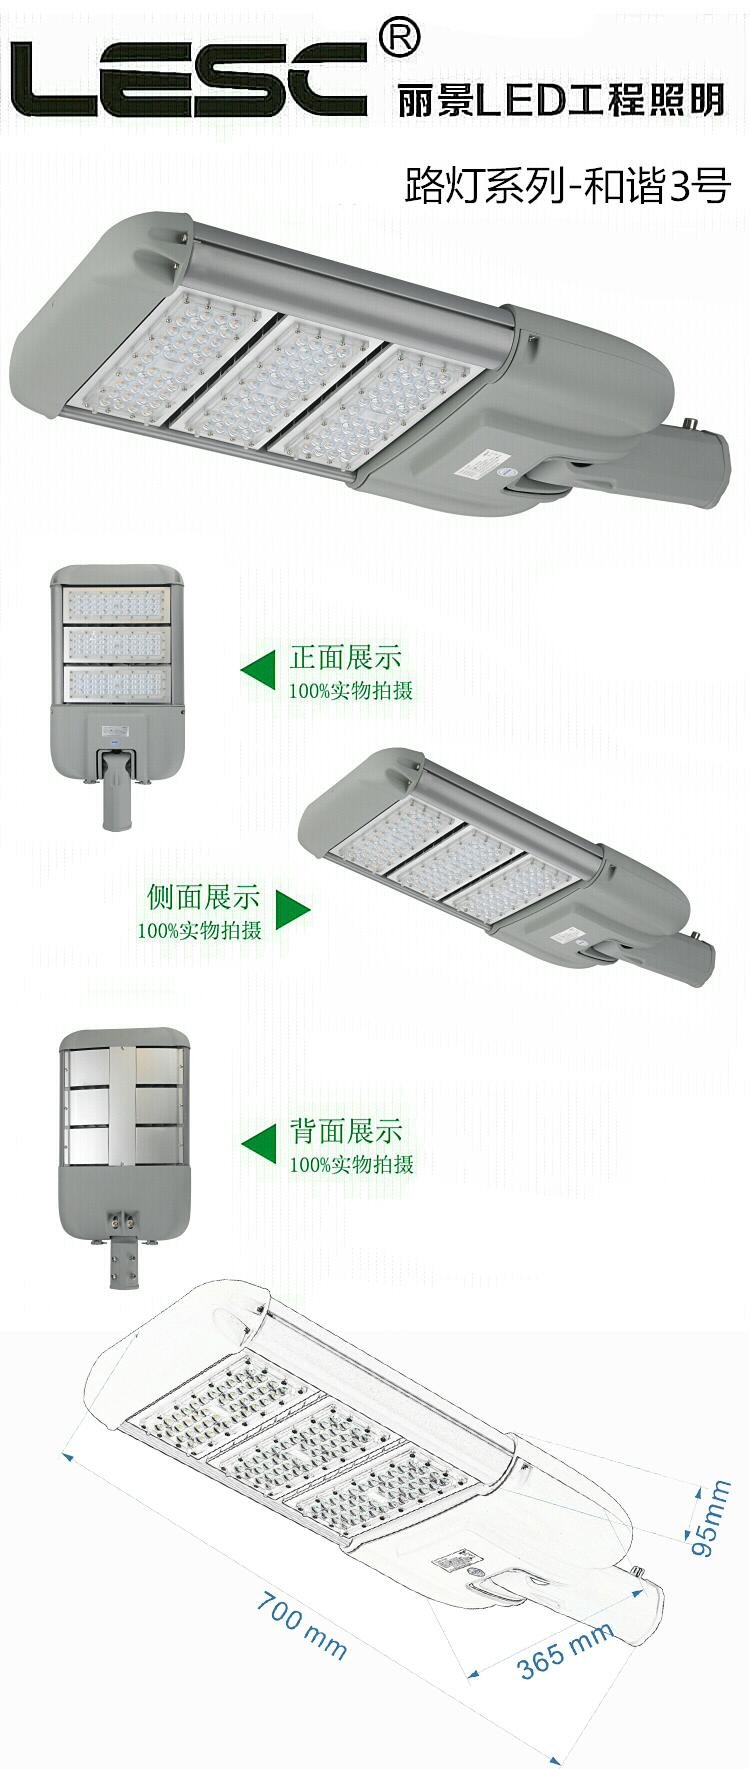 广州智慧城市LED路灯改造工程智能路灯节能安防一体化路灯和谐三号 4